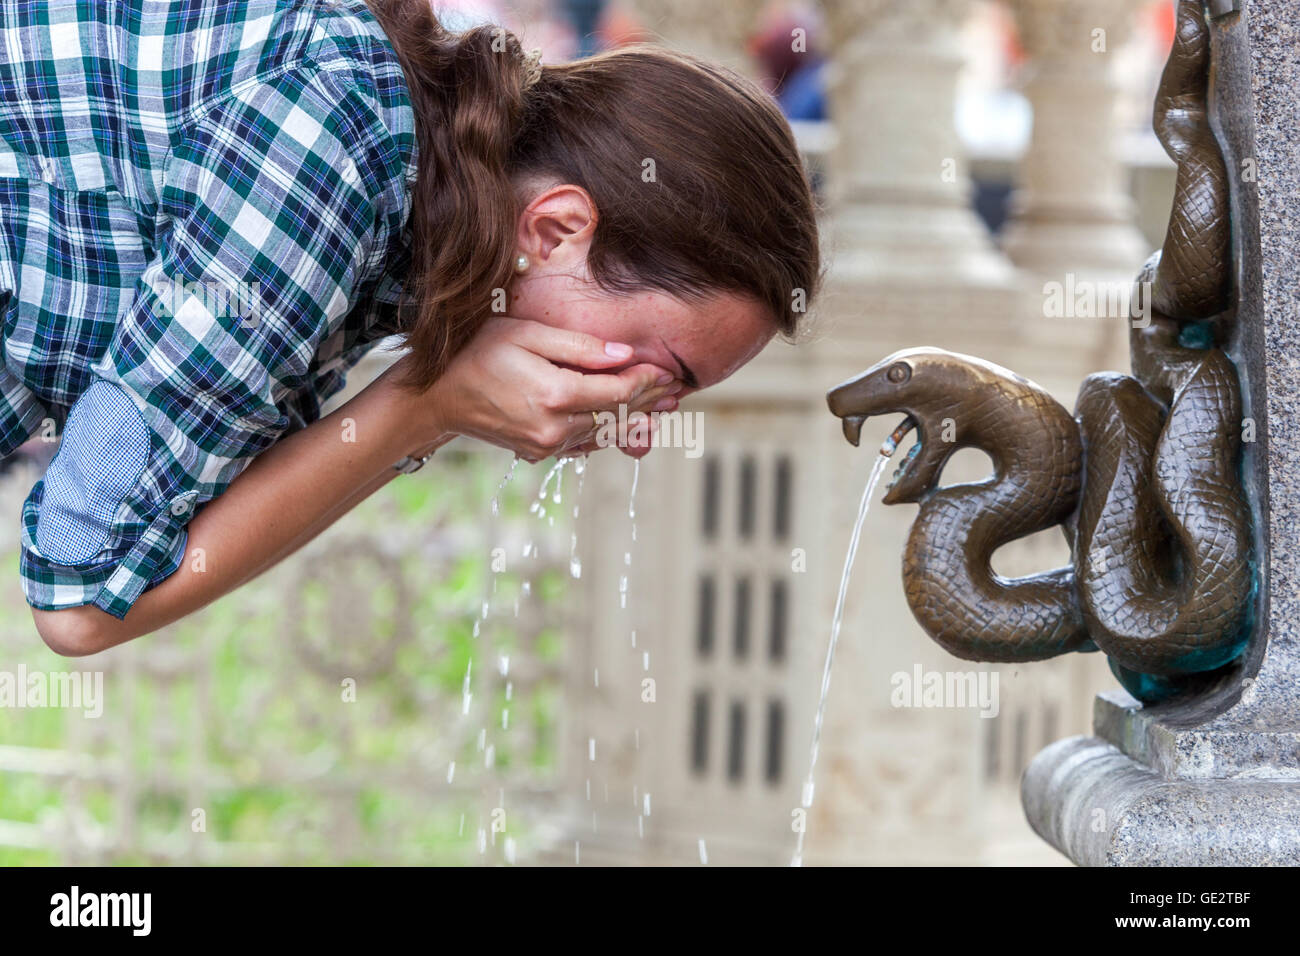 Snake Printemps à la colonnade, de l'eau minérale, femme lave le visage, Karlovy Vary République Tchèque Banque D'Images